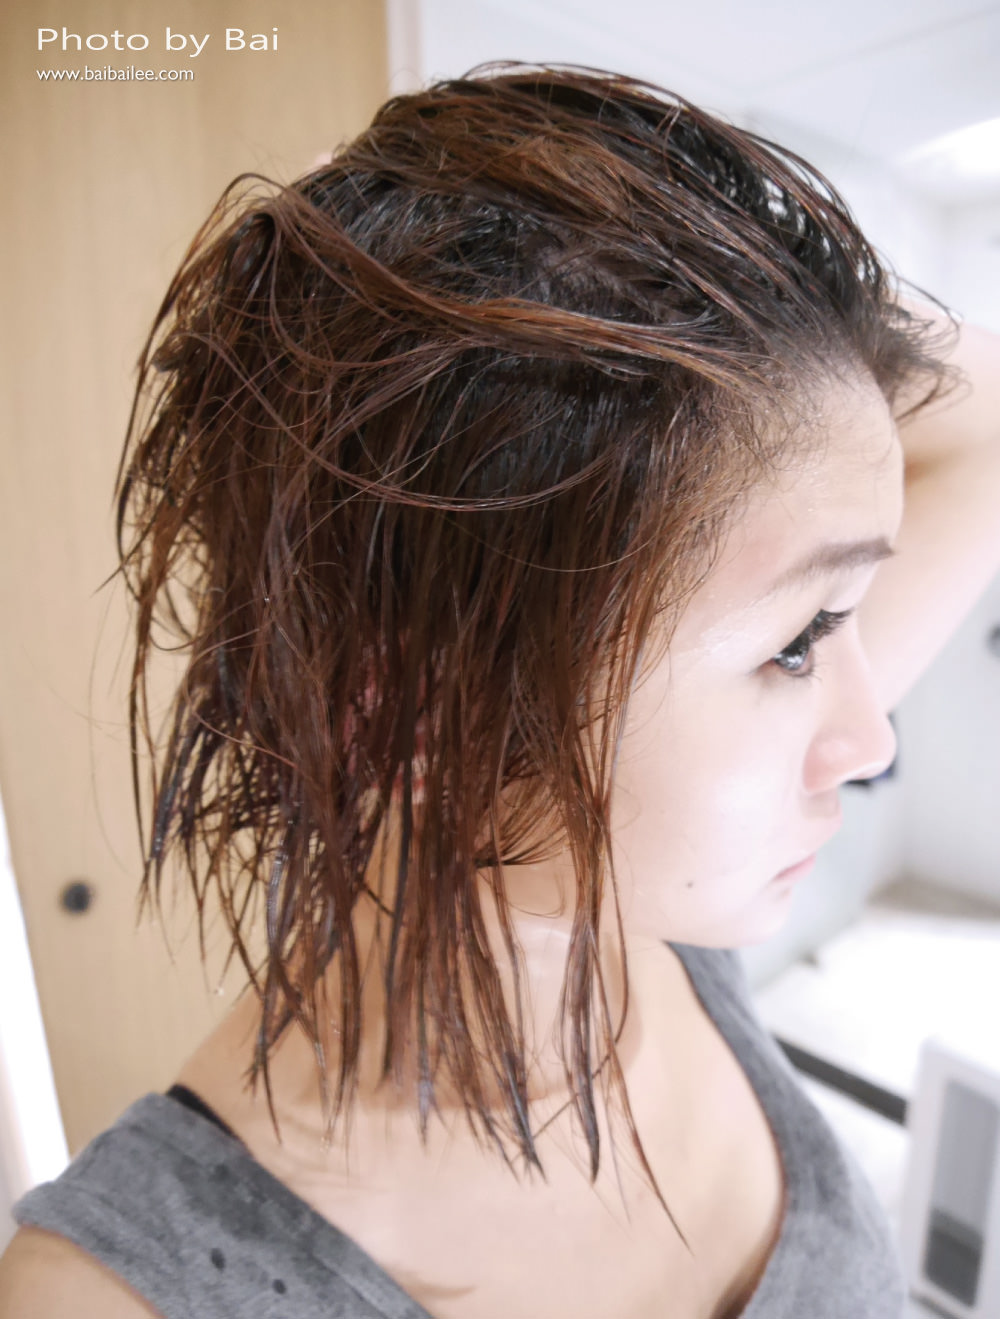 [髮品] CONTIN康定酵素植萃洗髮乳拒絕油頭扁塌髮,強健髮根給頭髮整天蓬鬆感